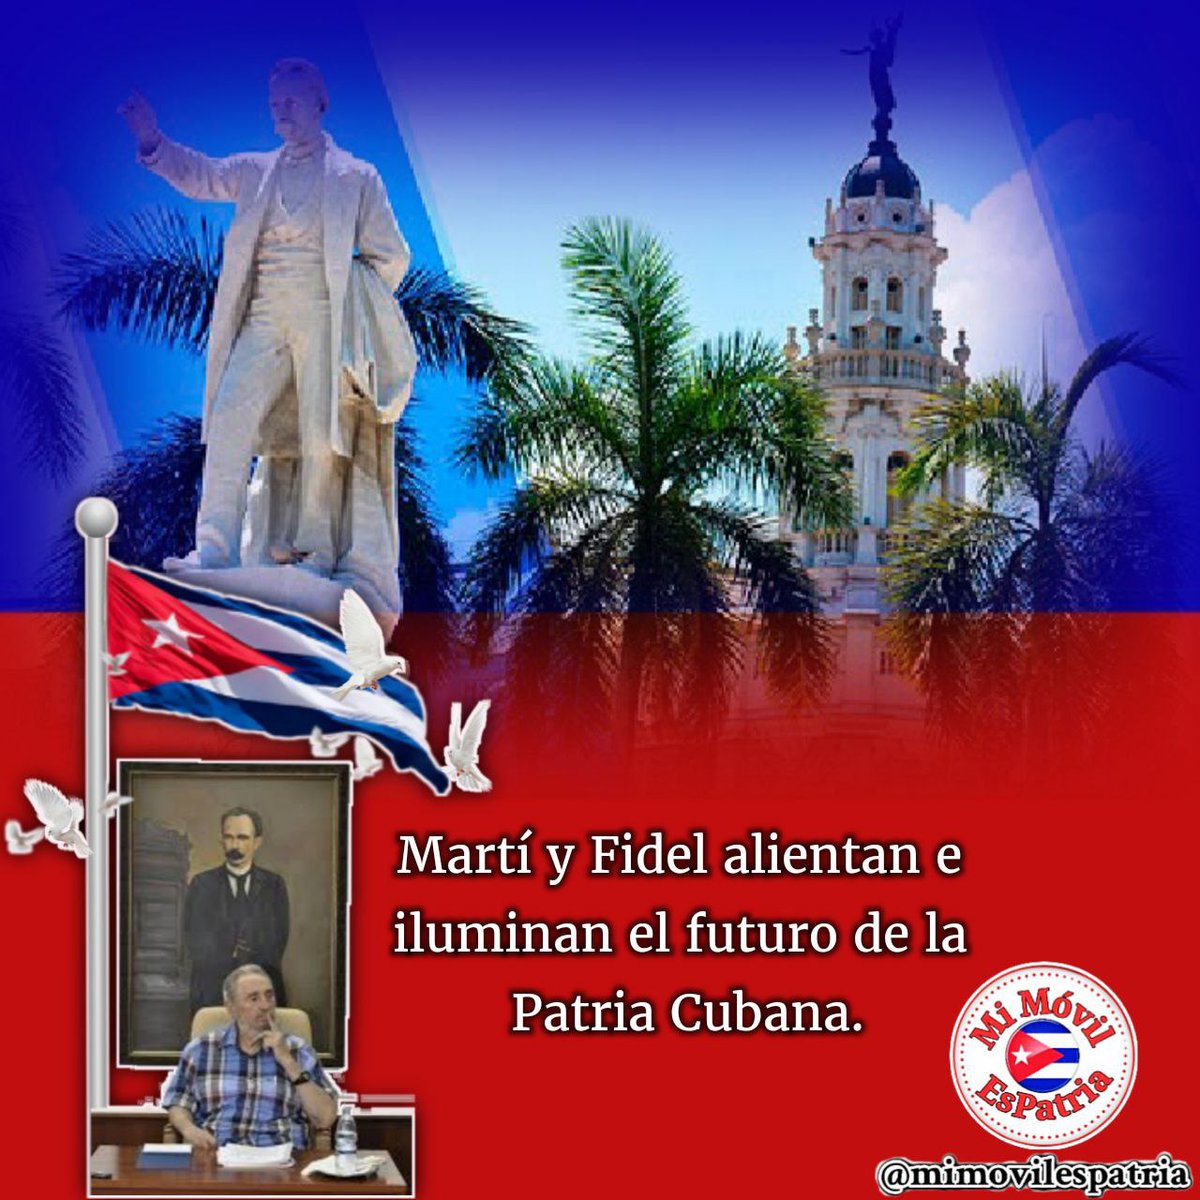 Buenos días #Cuba, el primer pensamiento para dos grandes hombres, cada uno en su tiempo, que alientan e iluminan el futuro de la Patria. #DeCaraAlSol #MiMóvilEsPatria